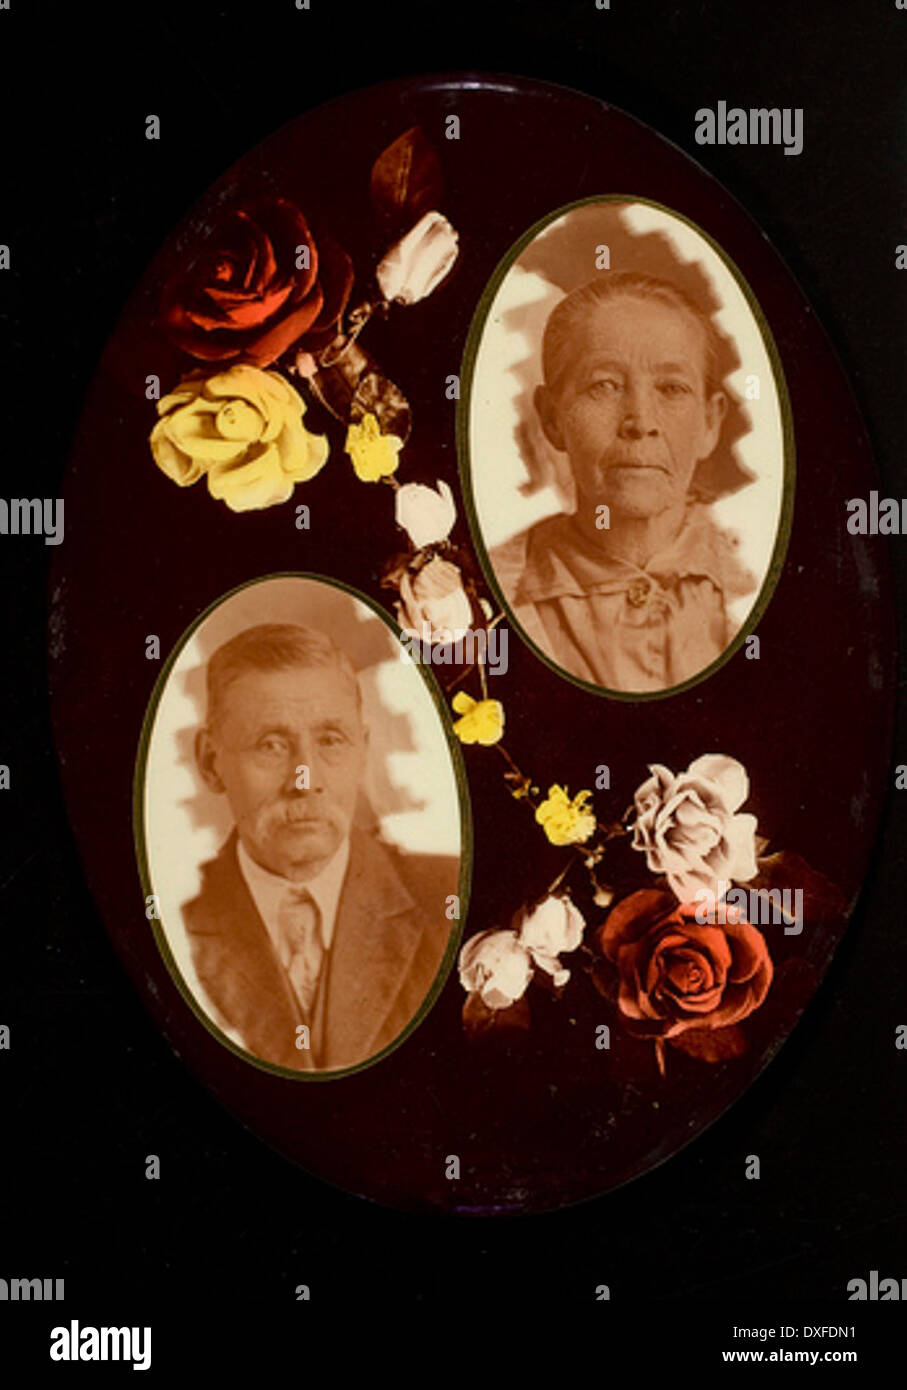 Deux portraits non identifiés avec des roses deux portraits non identifiés avec des roses Banque D'Images